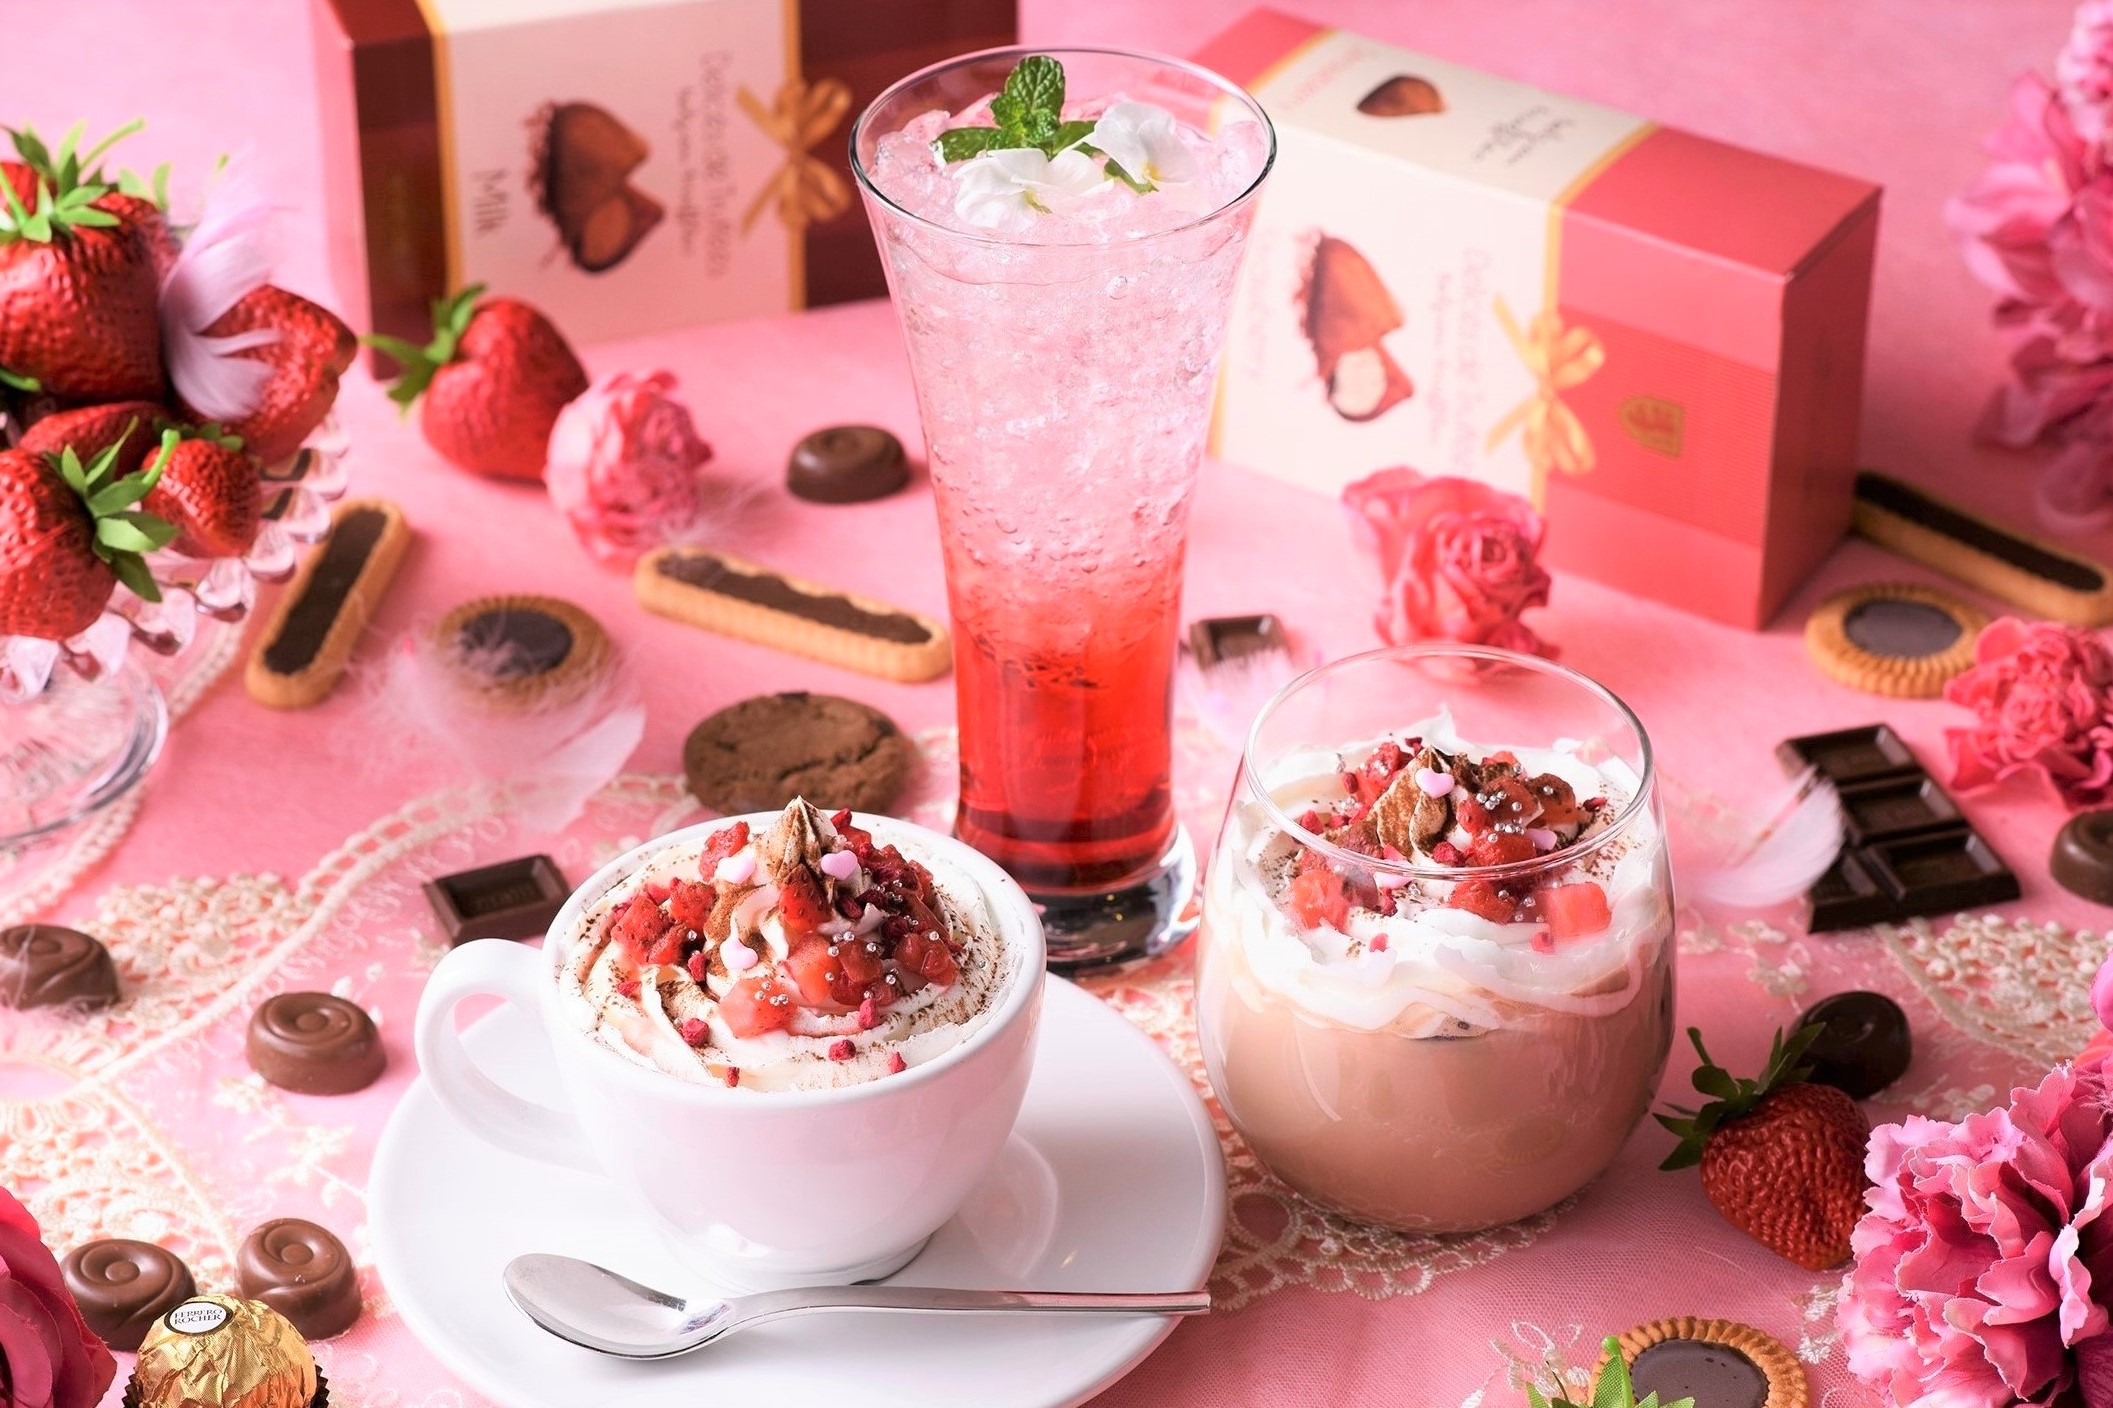 苺とチョコのスイーツフェア「Sweet Strawberry Valentine」がアニヴェルセルカフェ みなとみらい横浜にて期間限定開催中5